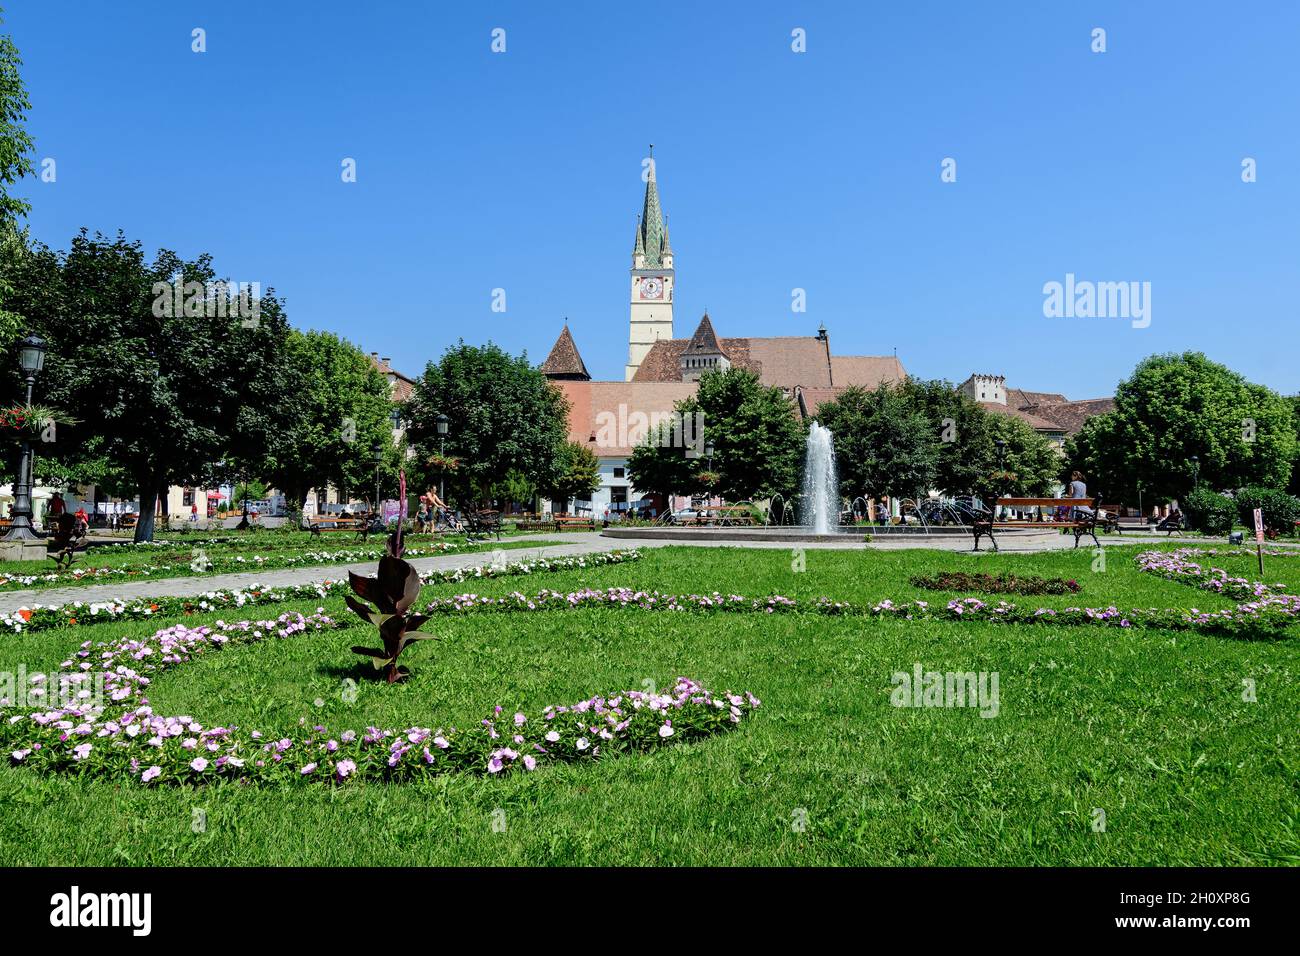 Paesaggio urbano con Piazza Ferdinando i Re (Piata Regele Ferdinando i) e parco verde nel centro storico di Medias, in Transilvania (Transilvania) Foto Stock